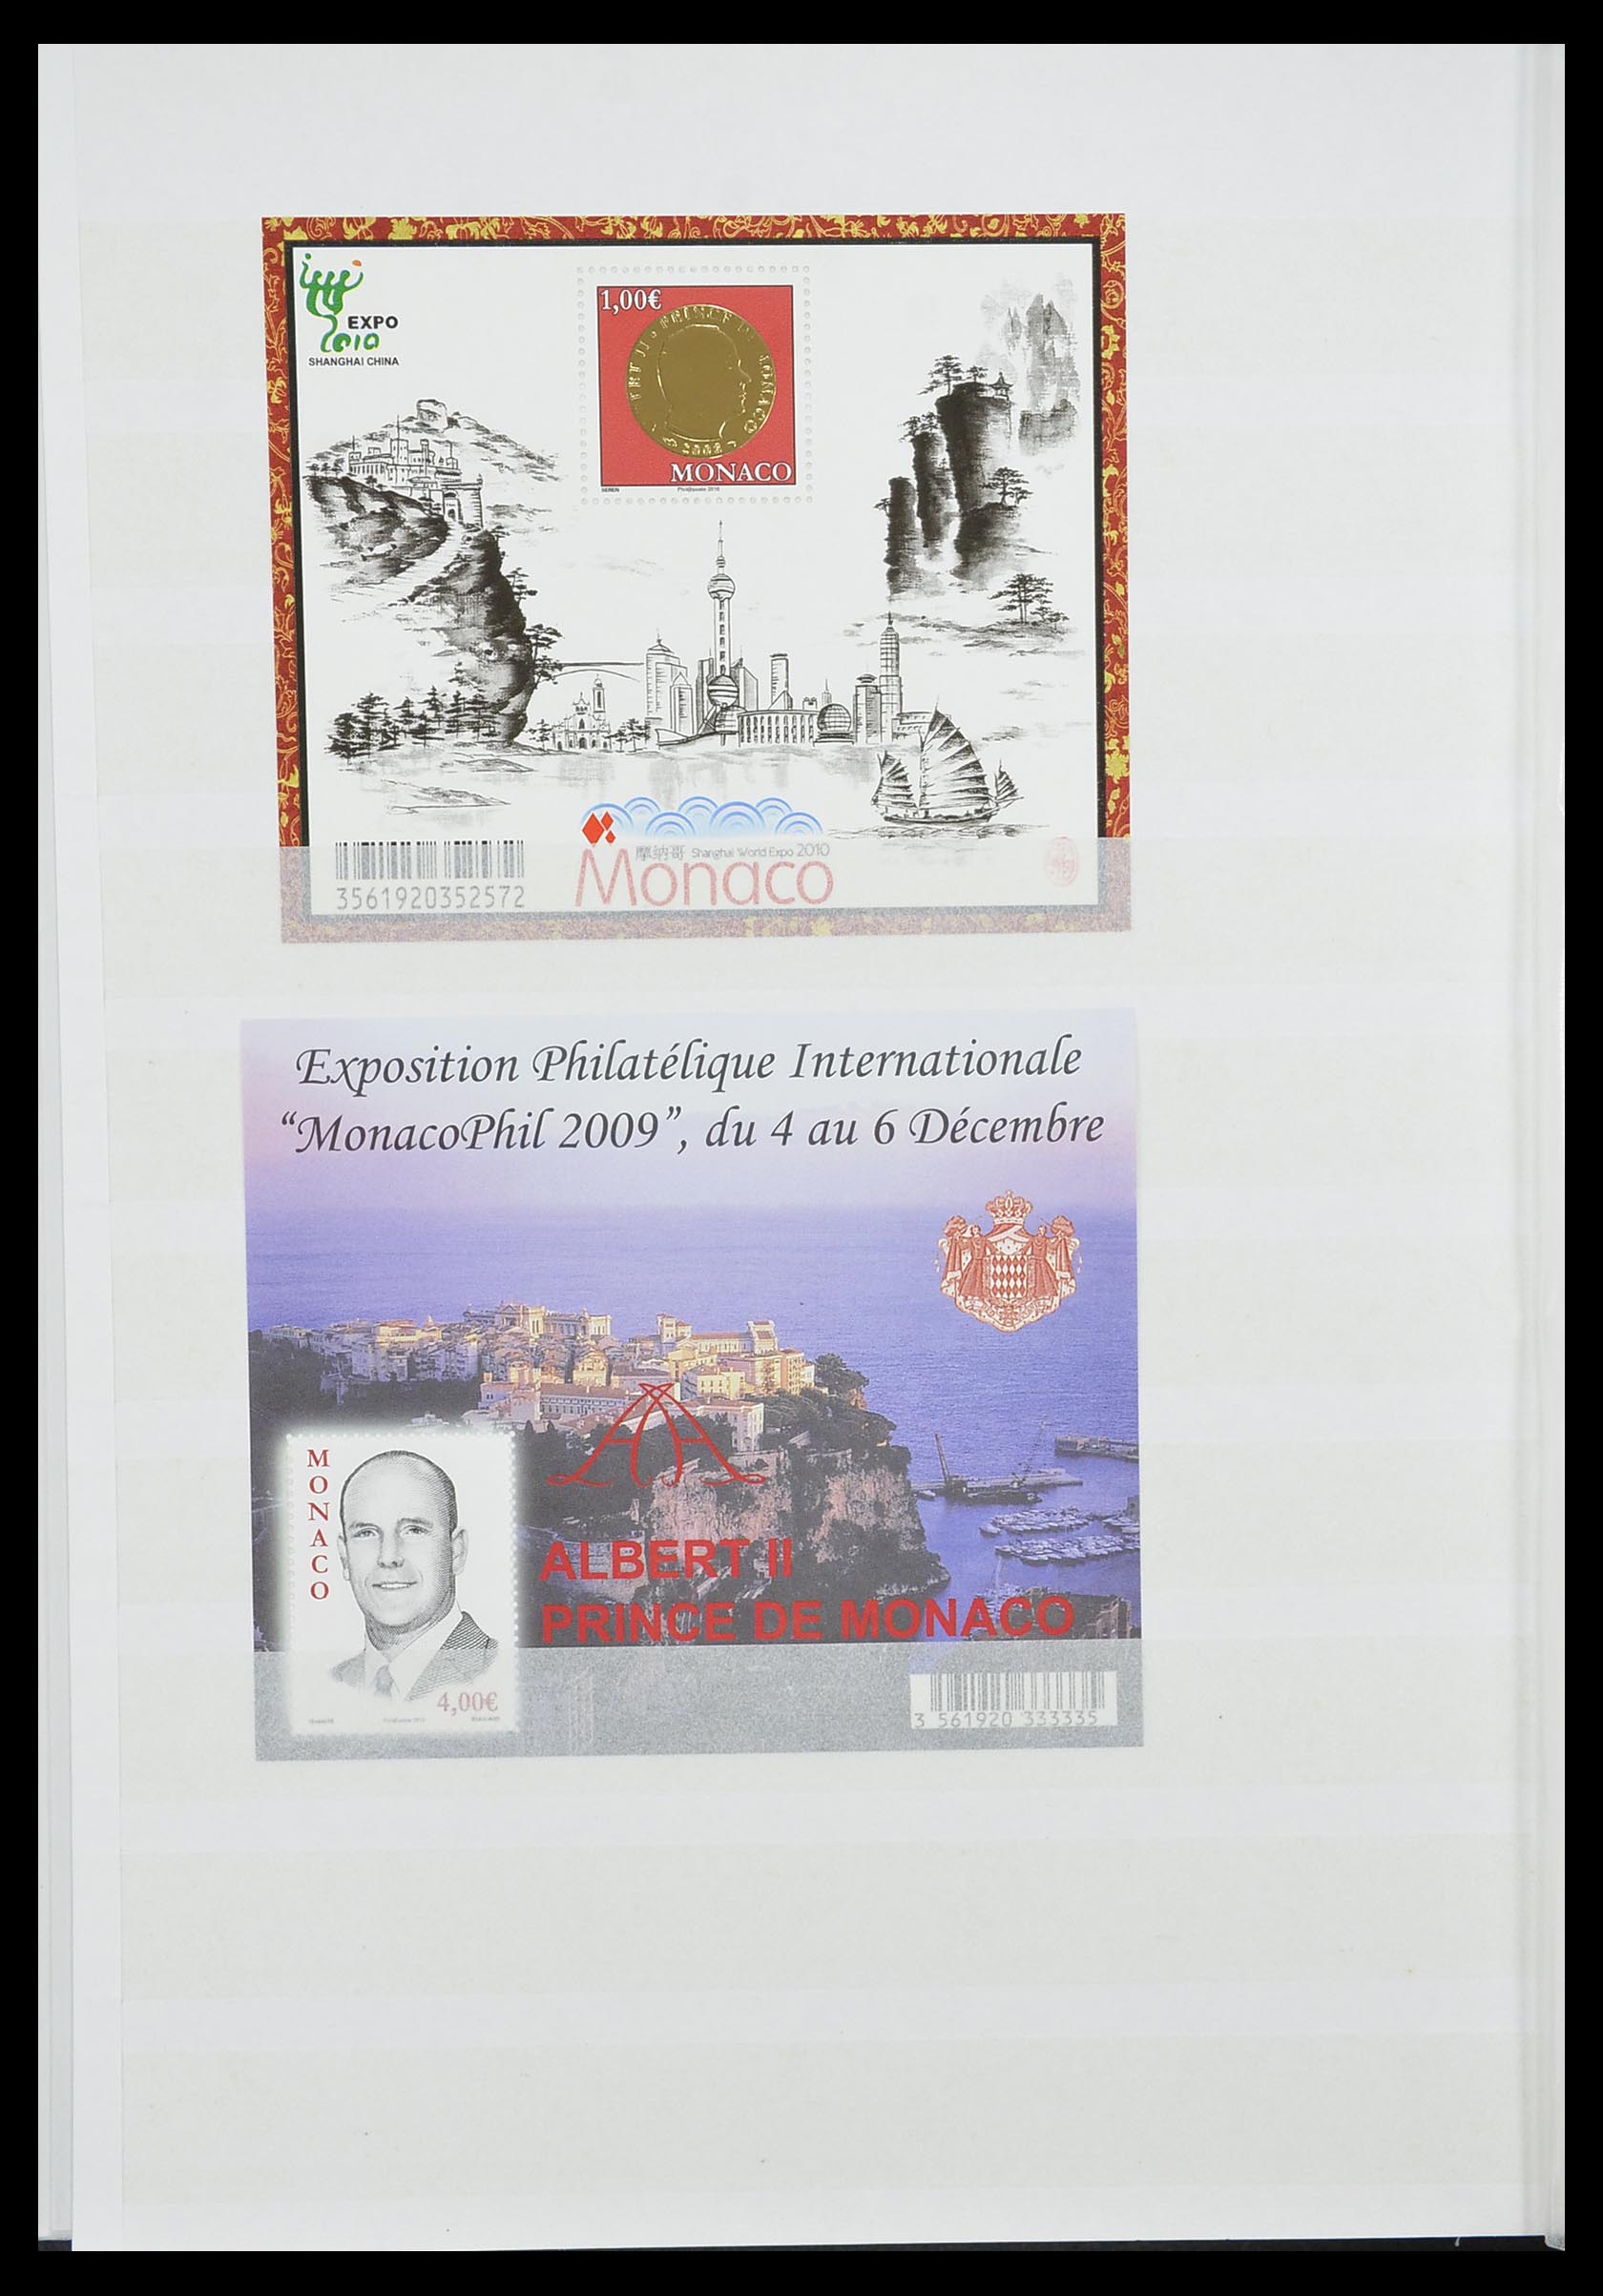 33833 052 - Stamp collection 33833 Monaco souvenir sheets 1979-2015.